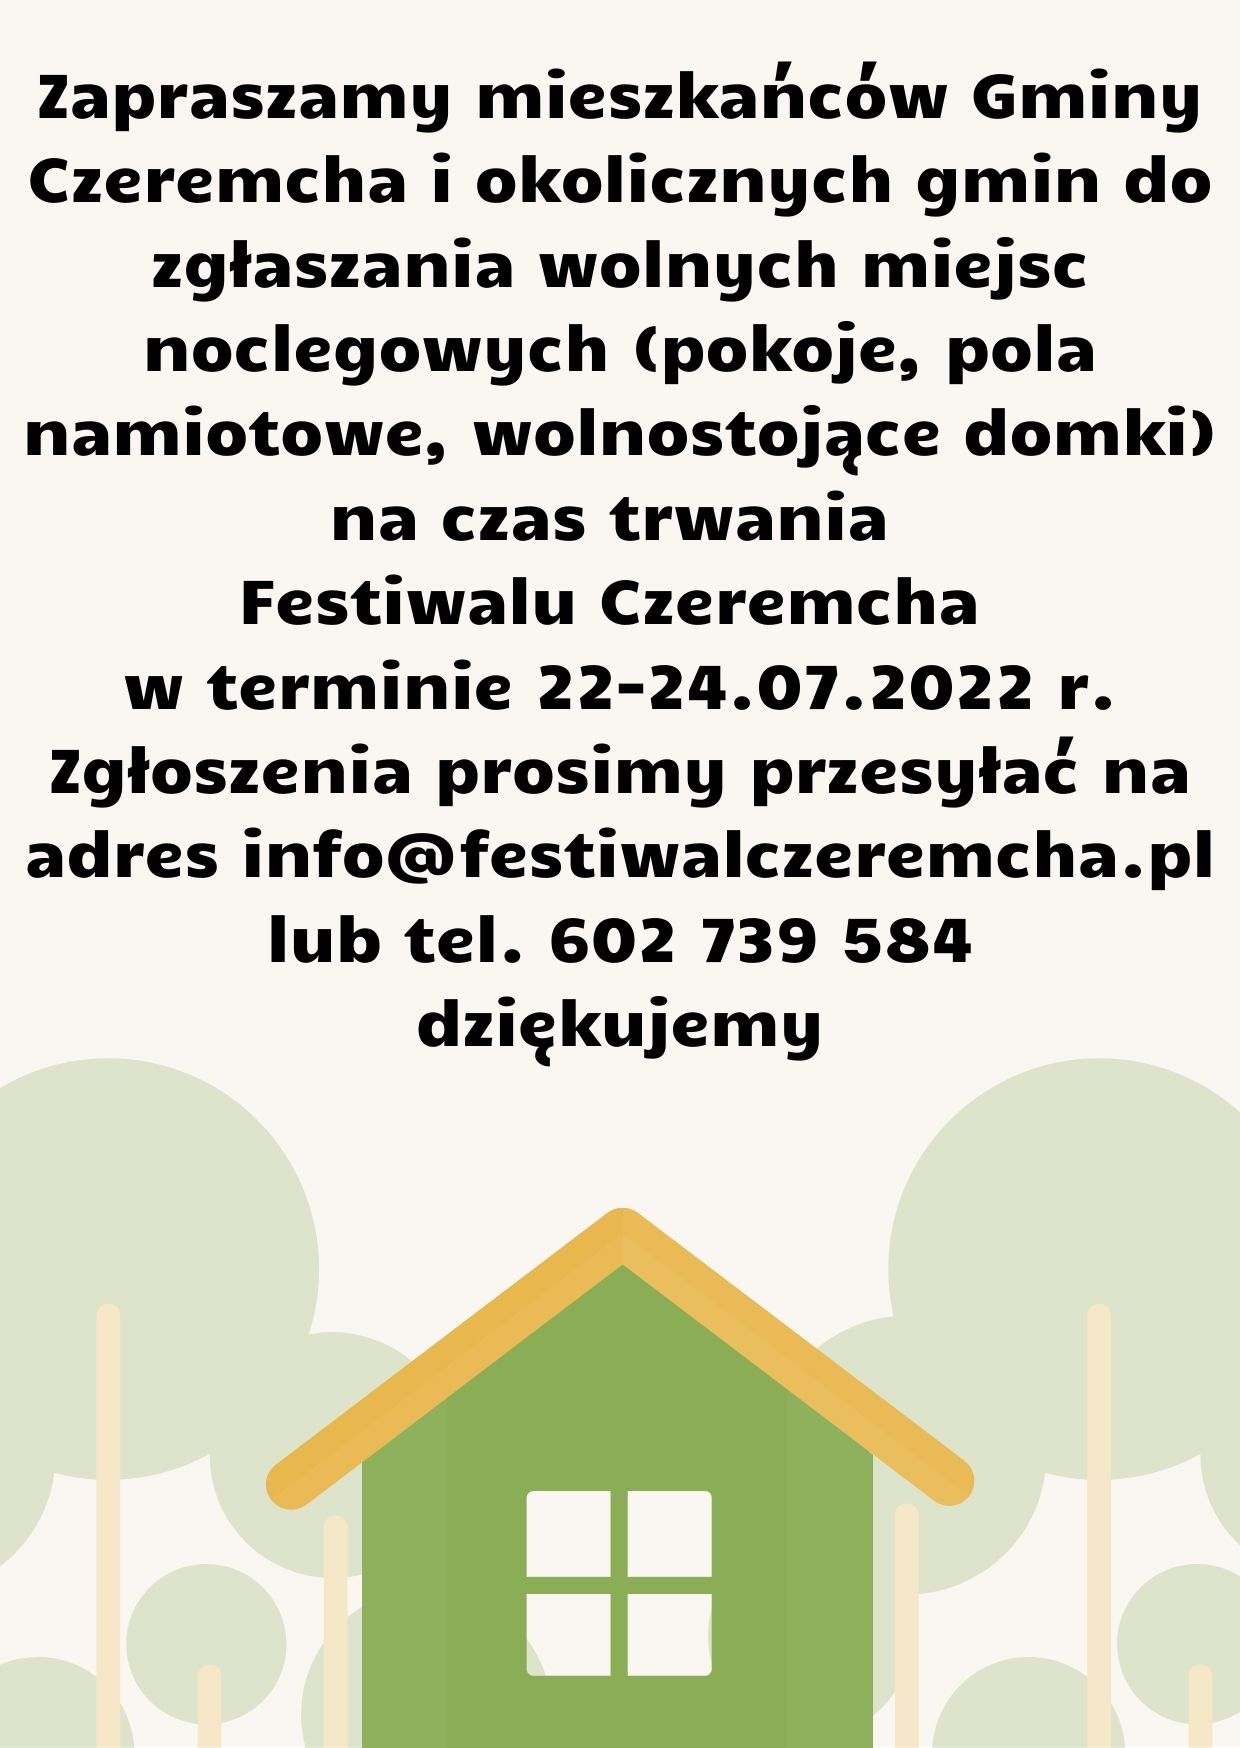 noclegi festiwal